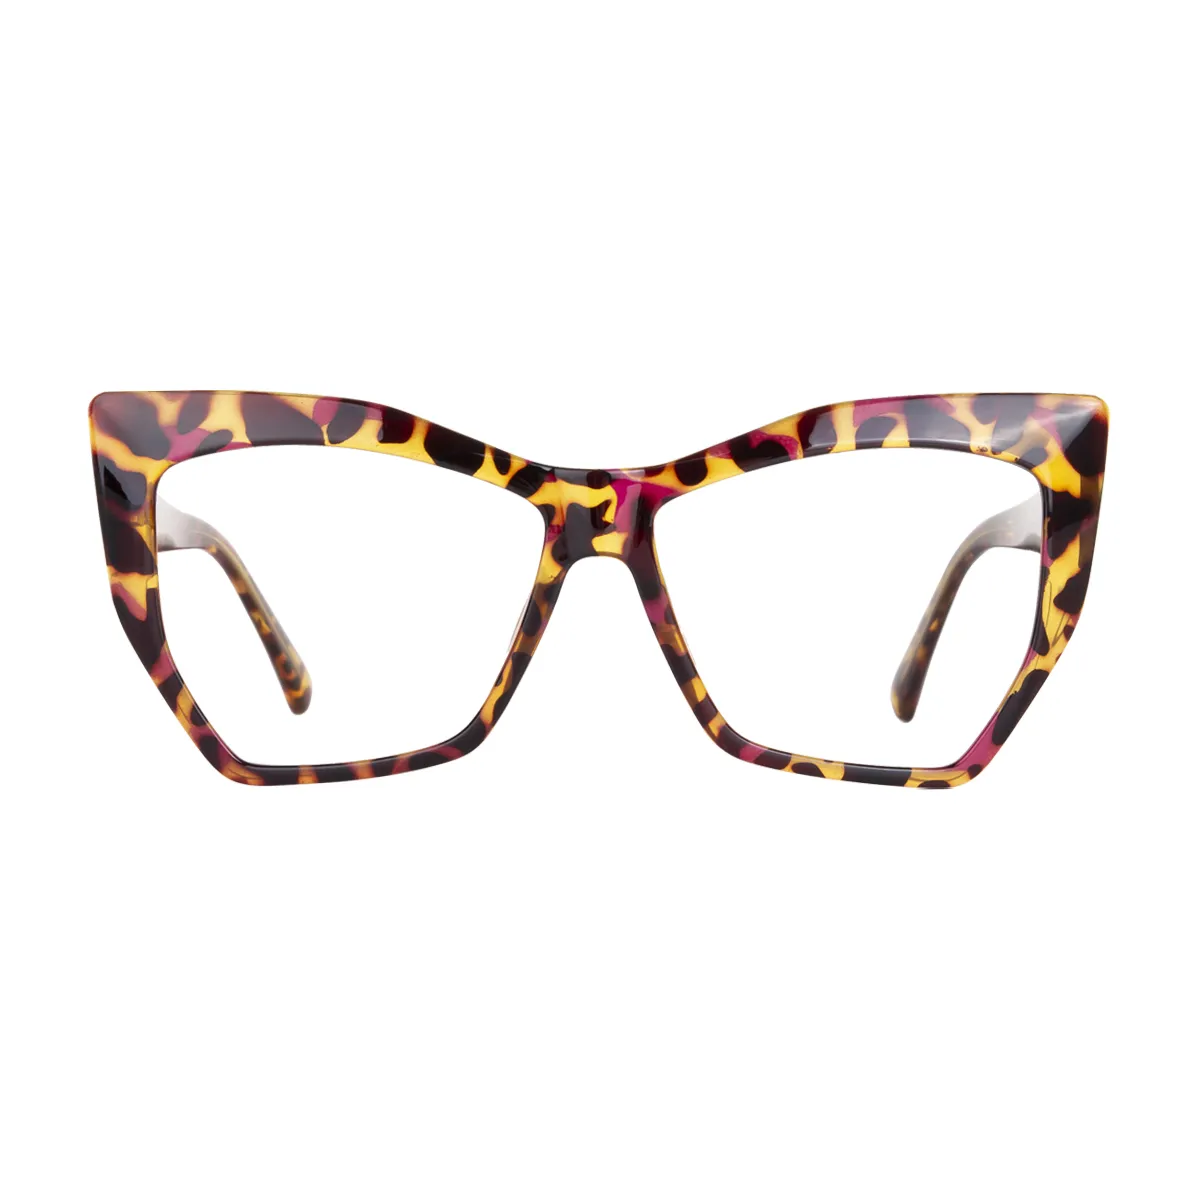 Lora - Cat-Eye Tortoiseshell Glasses for Women